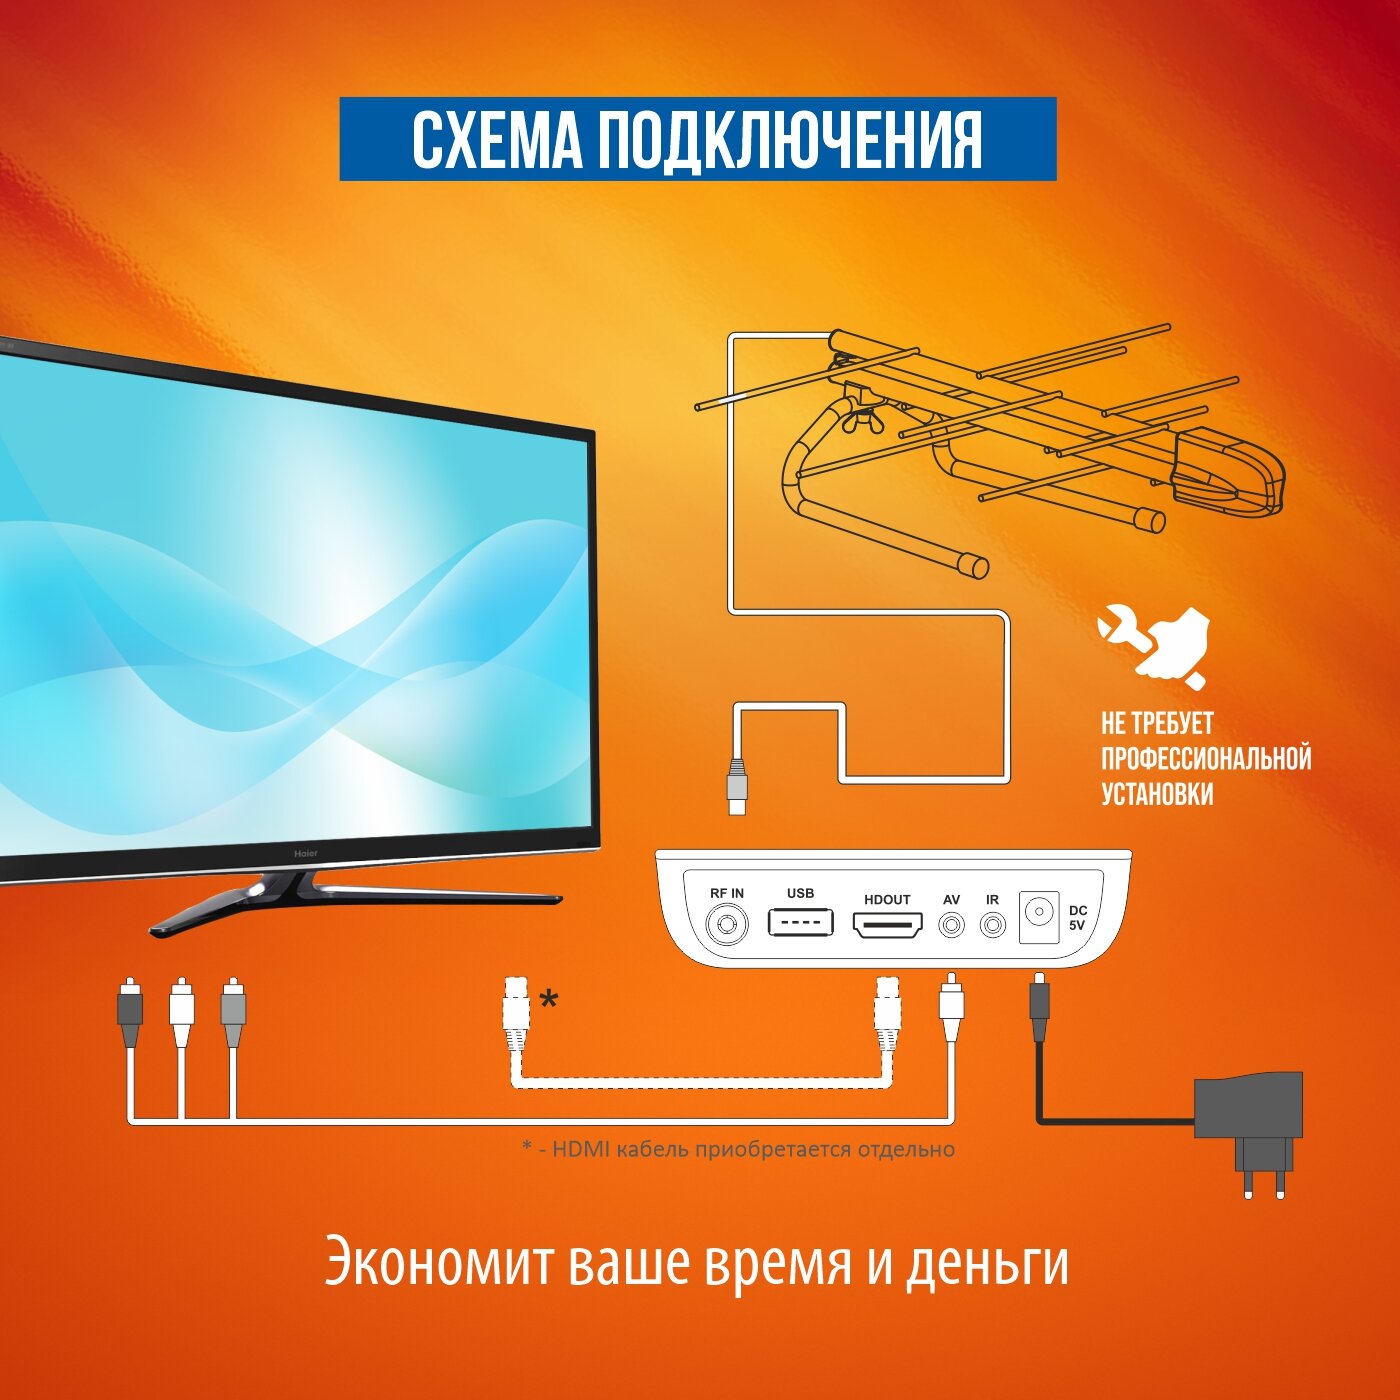 Комплект (ТВ приставка + комнатная направленная антенна) бесплатного цифрового телевидения РЭМО DVB-T2